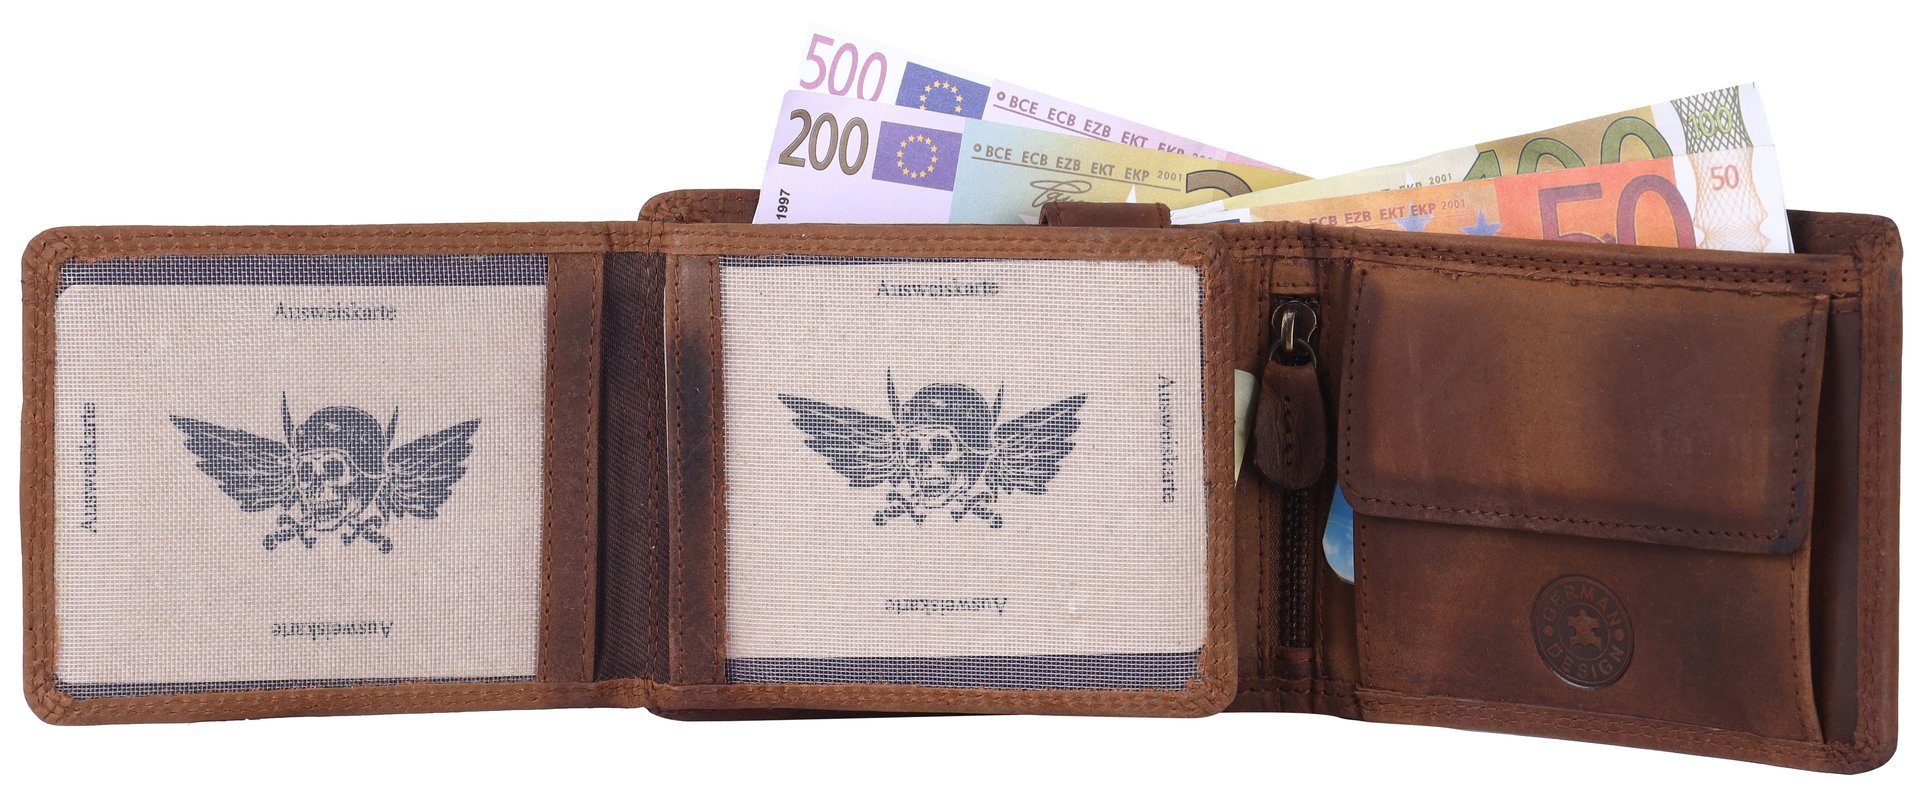 Herren Männerbörse Büffelleder Portemonnaie, Geldbörse Münzfach mit Börse Schutz SHG Brieftasche Leder Lederbörse RFID